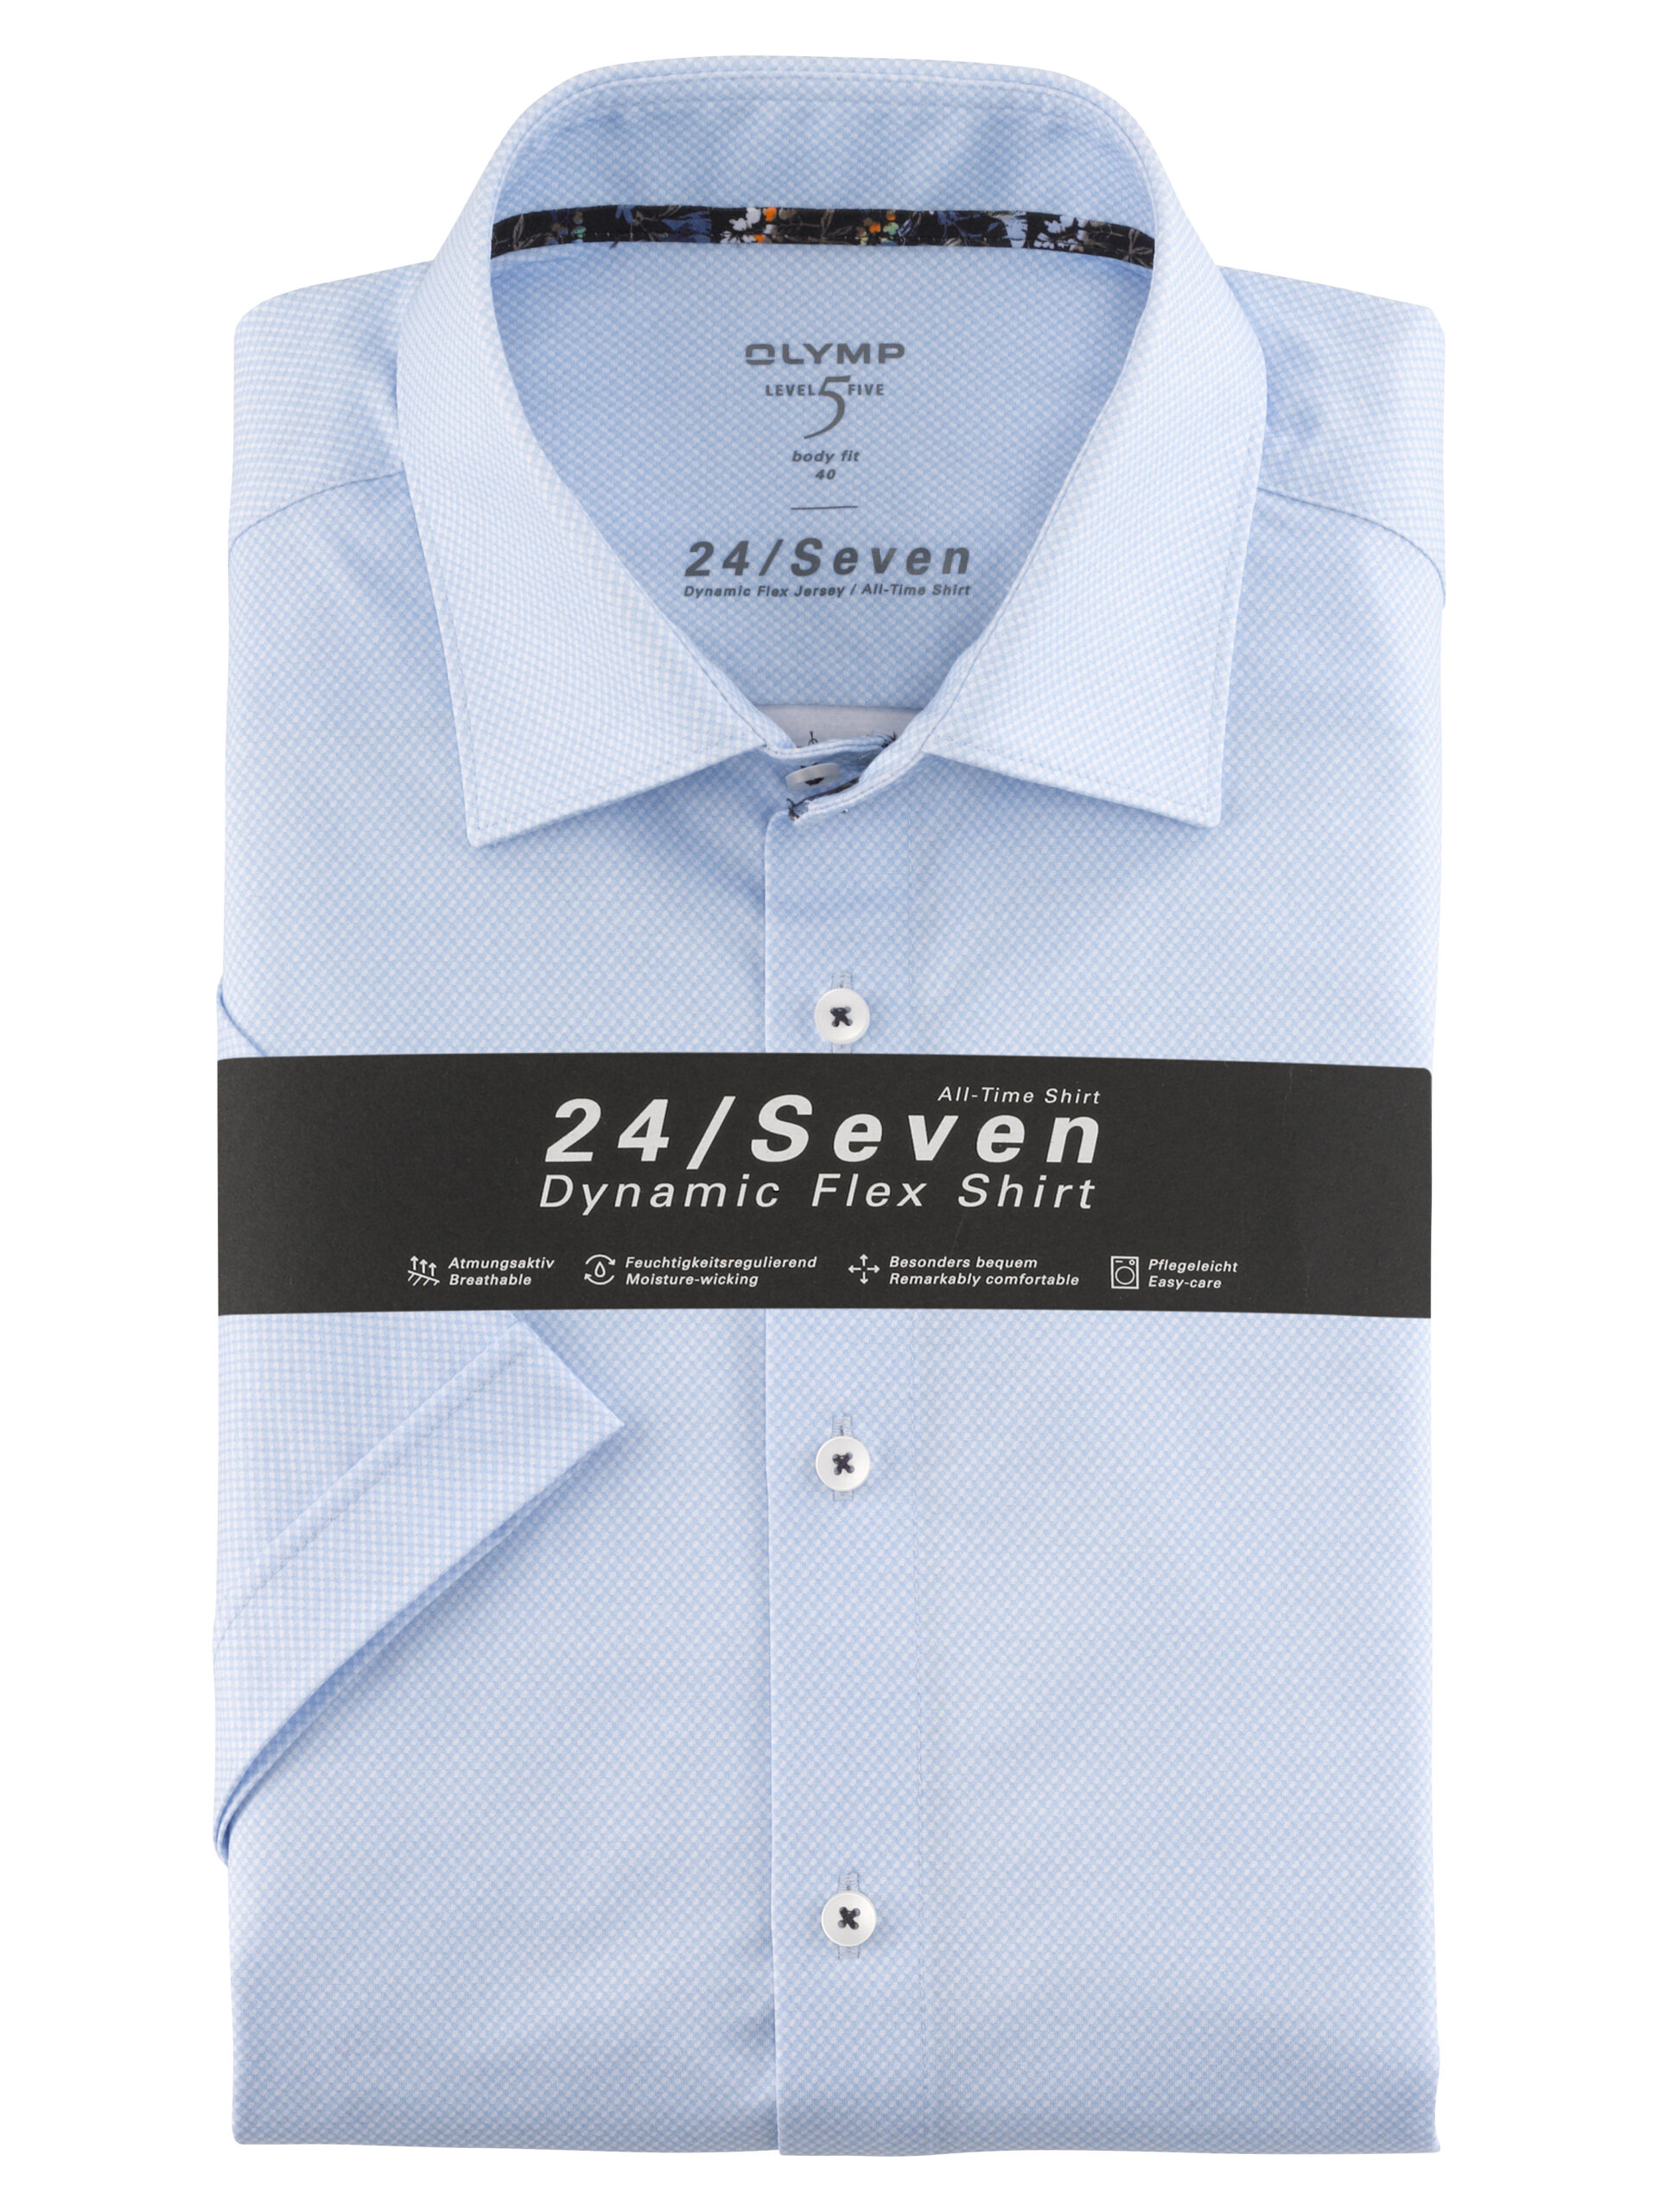 OLYMP Level Five 24/Seven body fit, Businesshemd, New York Kent, Bleu -  Hartmann Mode Shop